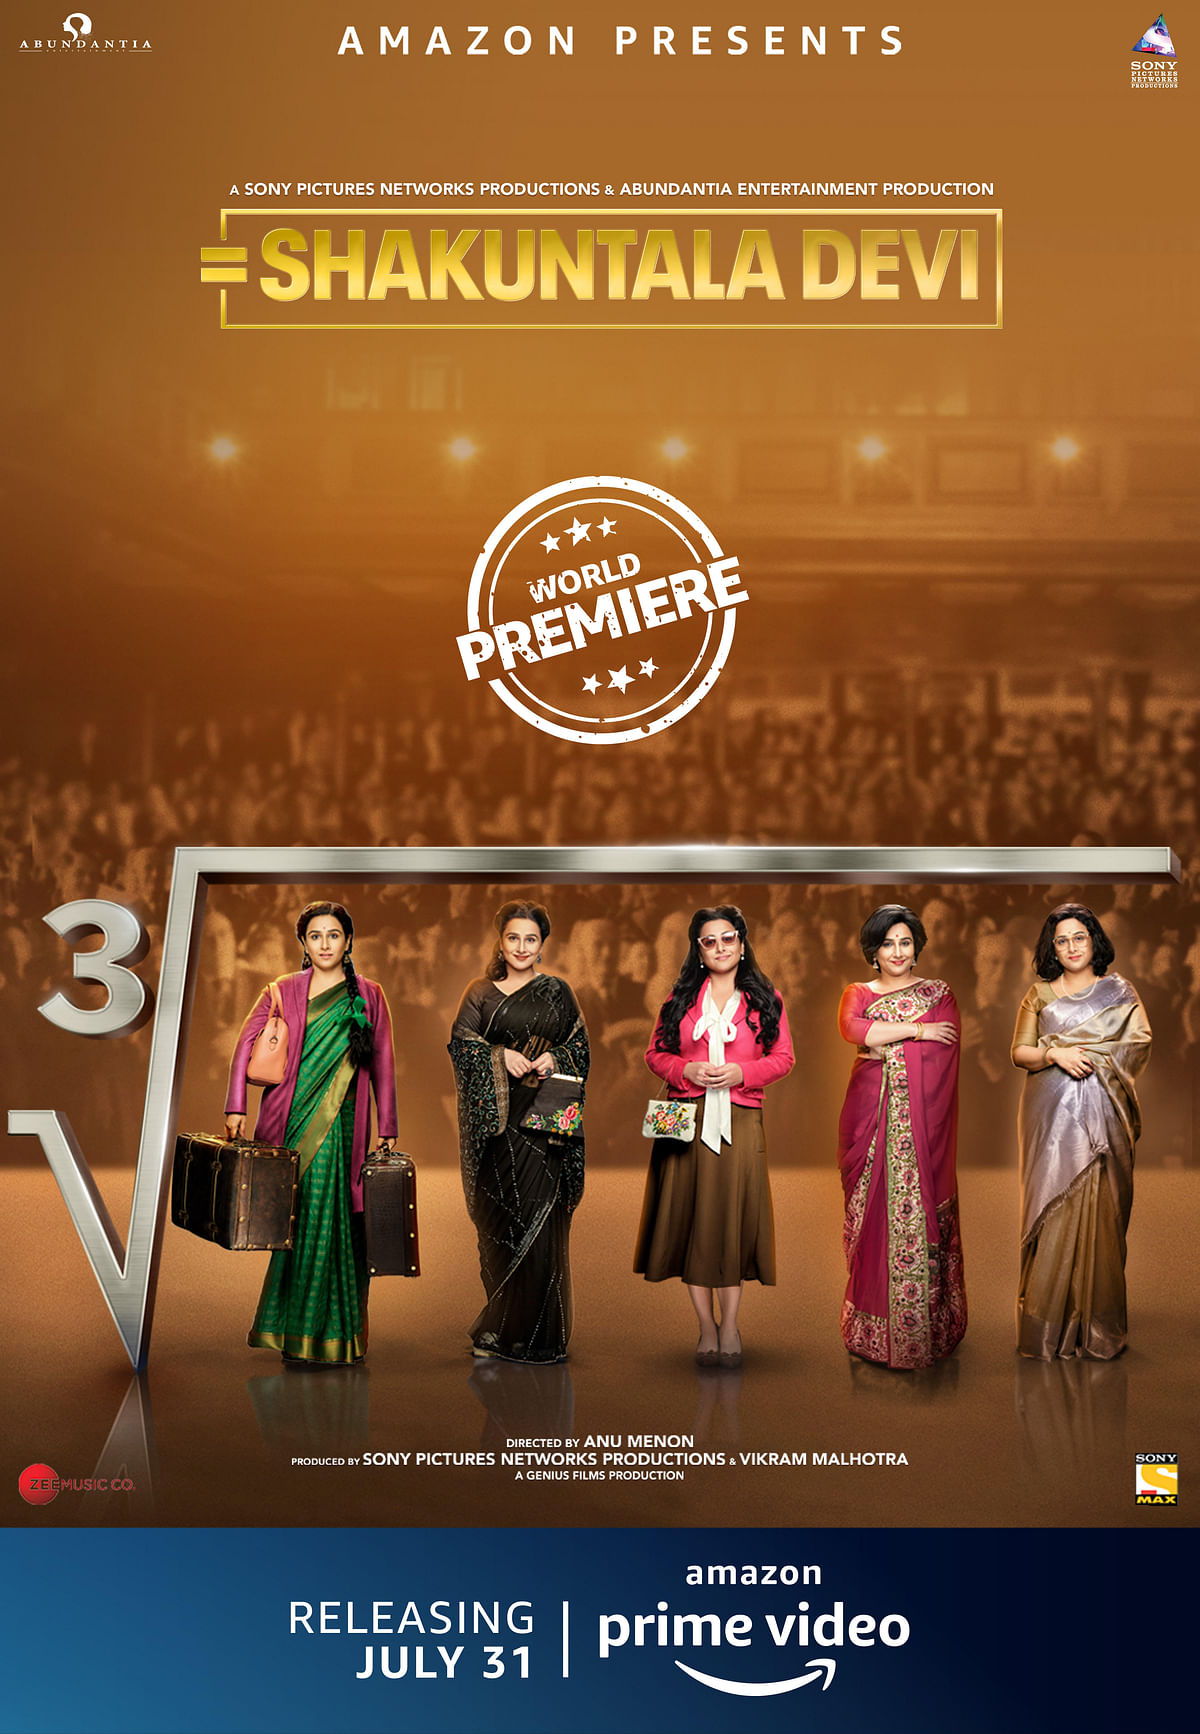 ‘Shakuntala Devi’ trailer: A treat for Vidya Balan fans